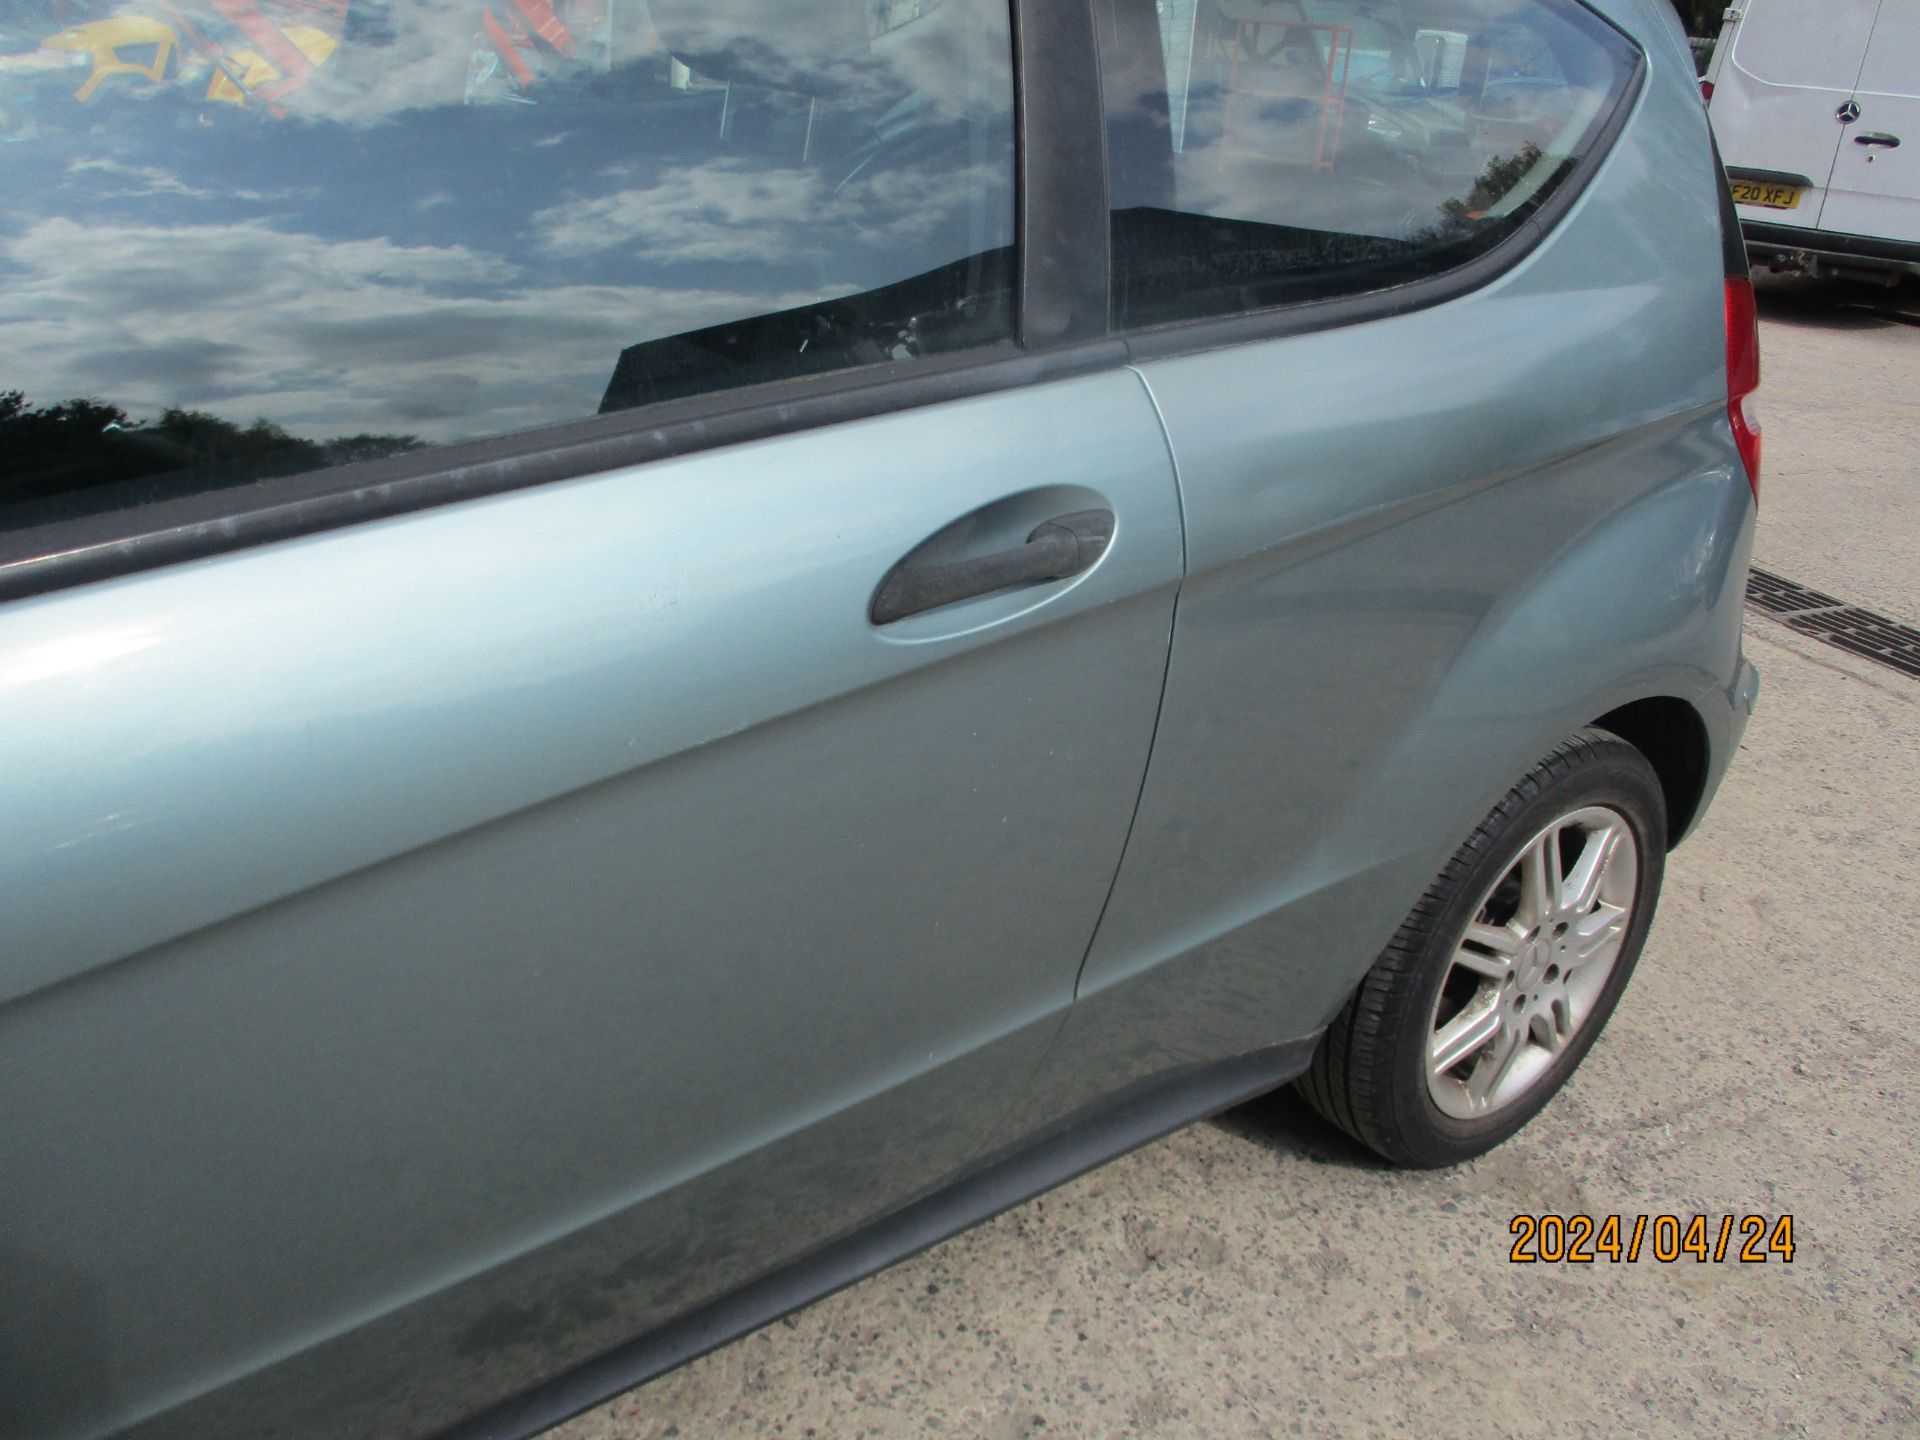 05/05 MERCEDES A150 CLASSIC SE - 1498cc 3dr Hatchback (Blue, 111k) - Image 11 of 21